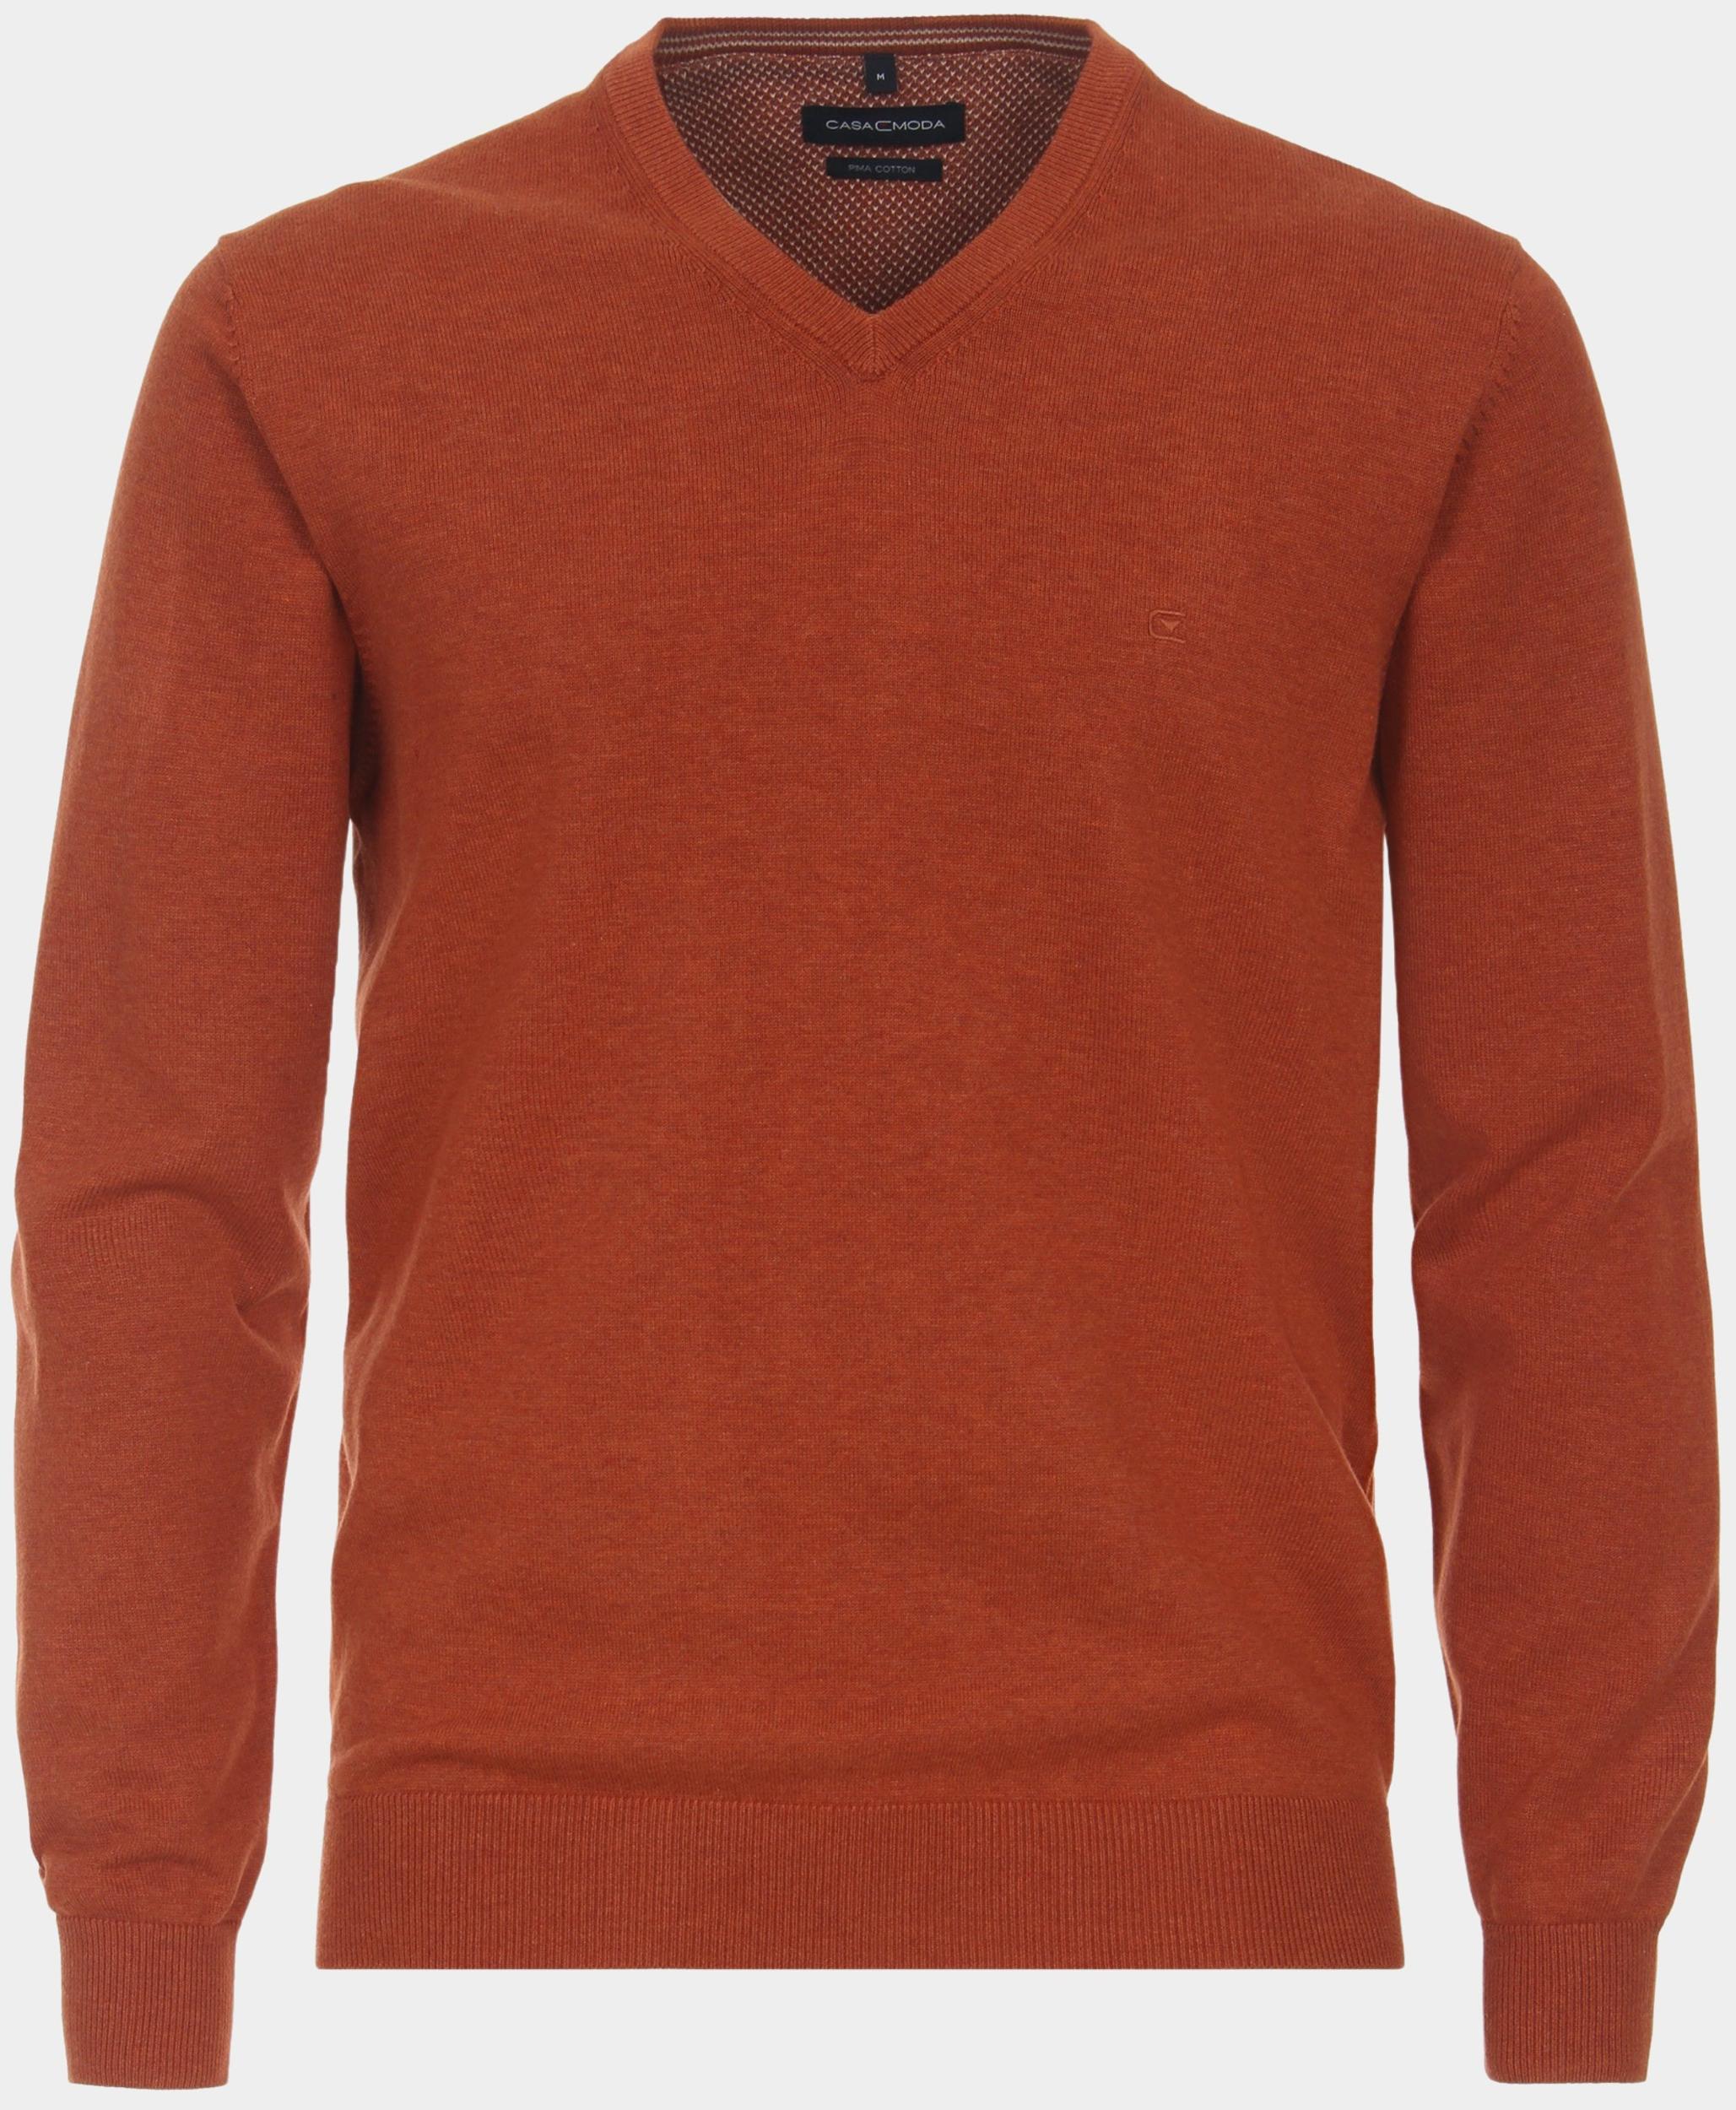 Casamoda Pullover Oranje Pullover V-Neck NOS 004430/465